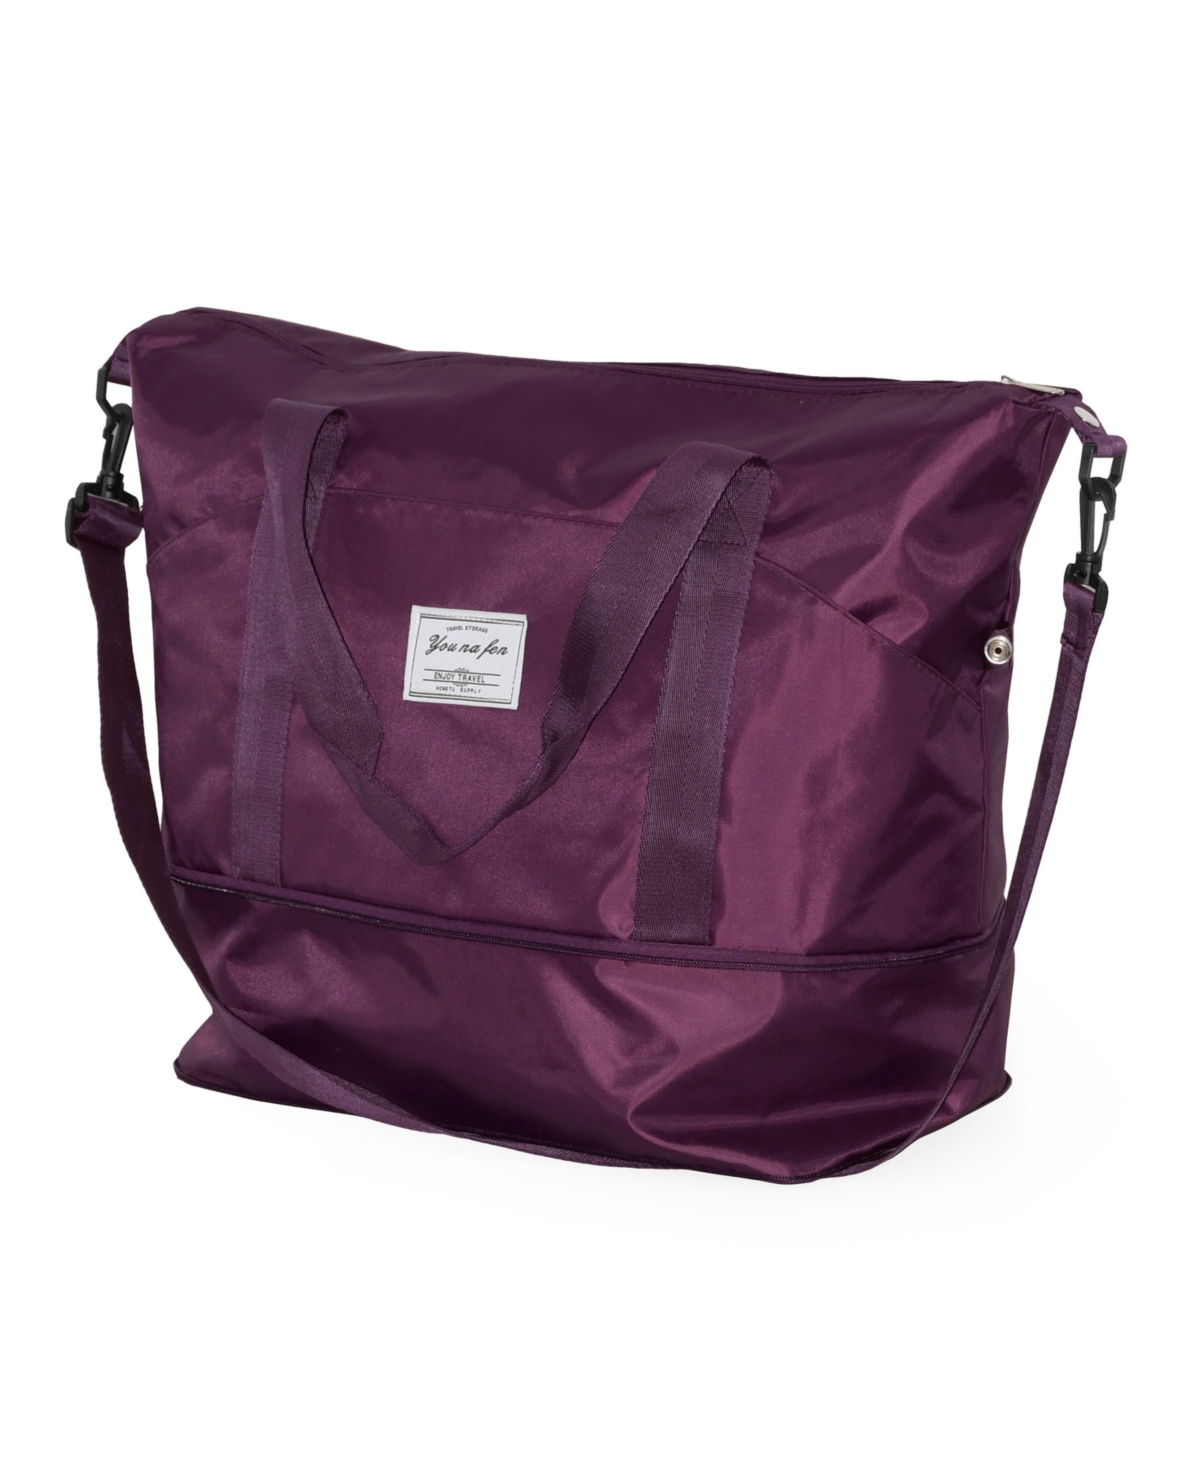 Ladies Weekender Duffel Expandable Bag - Deep purple